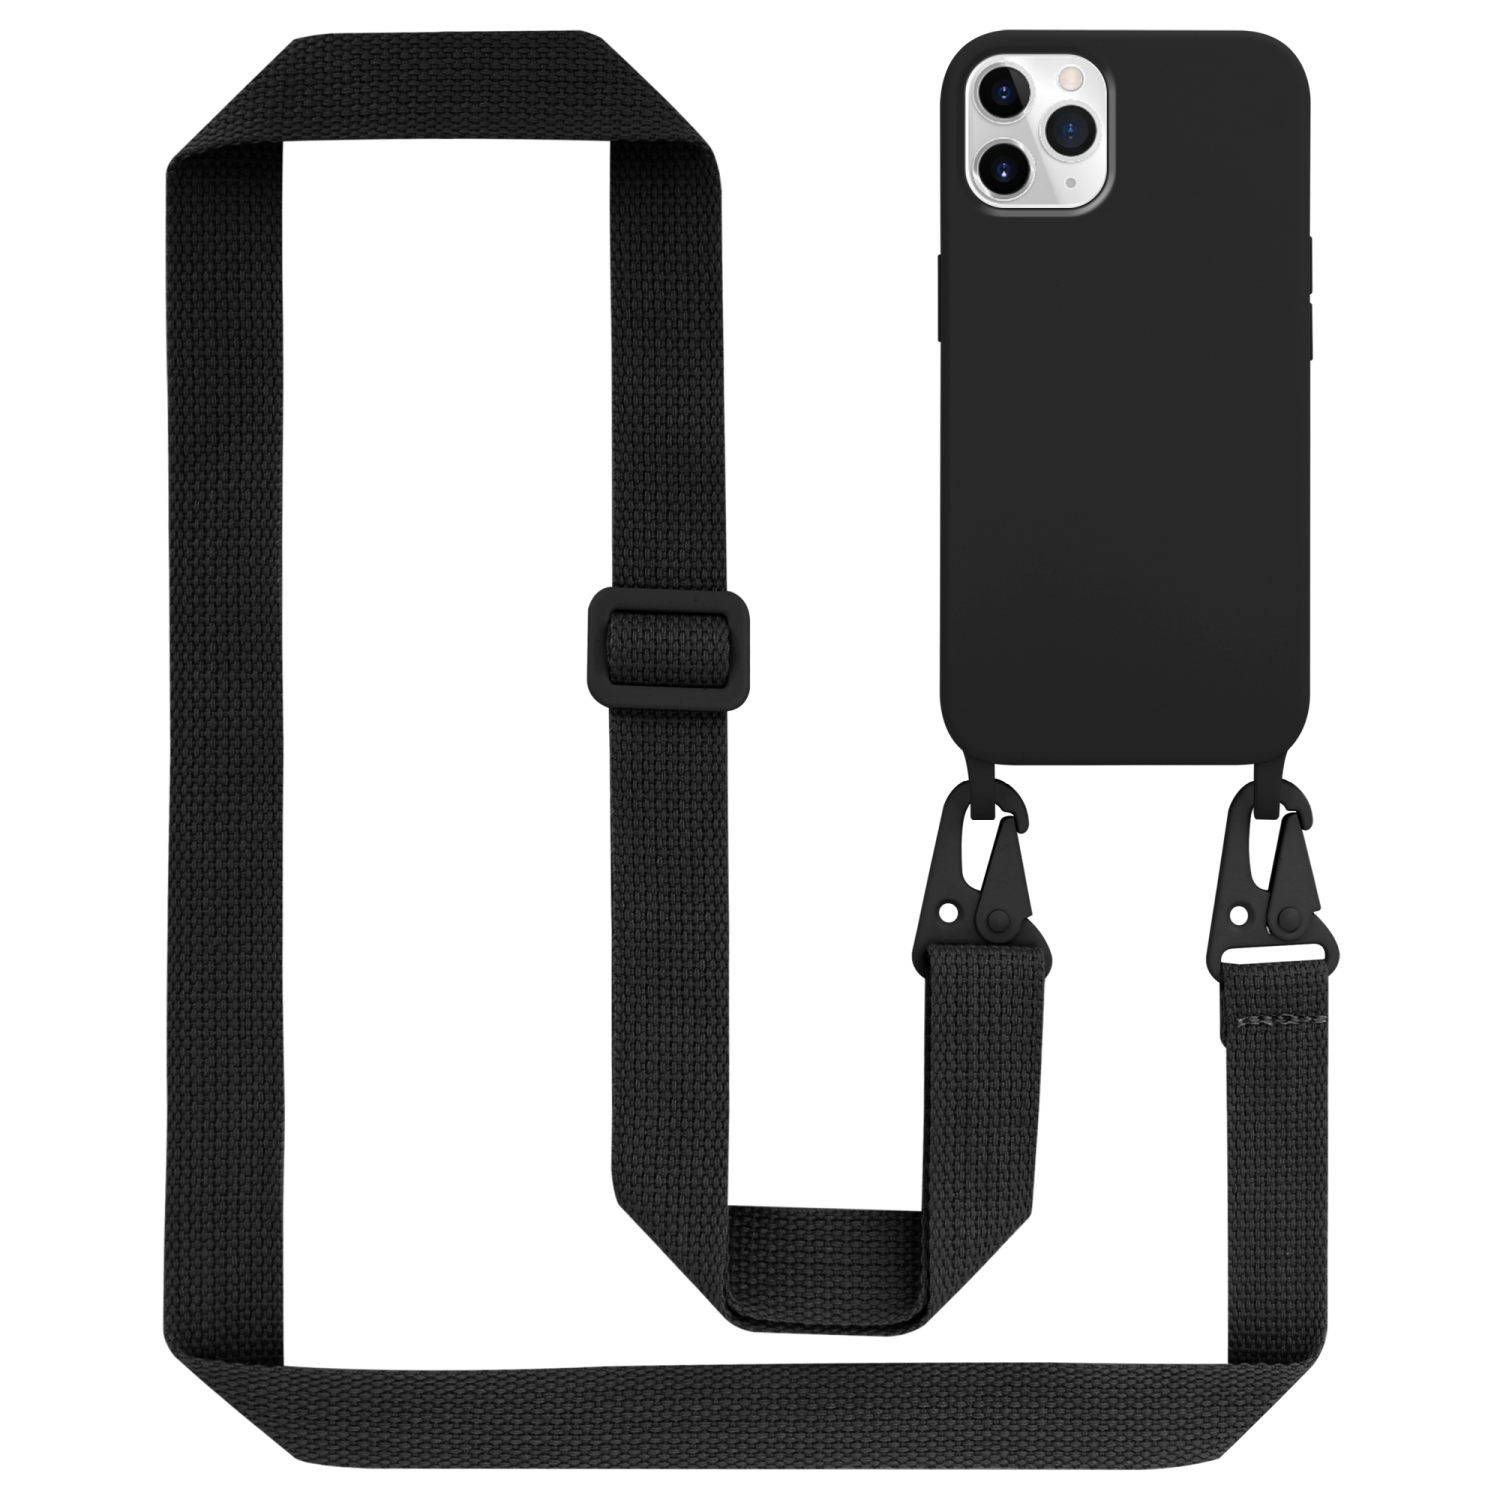 Cadorabo Mobiele telefoon ketting voor Apple iPhone 11 PRO MAX in LIQUID ZWART - Silicone beschermhoes met lengte verstelbare koord riem